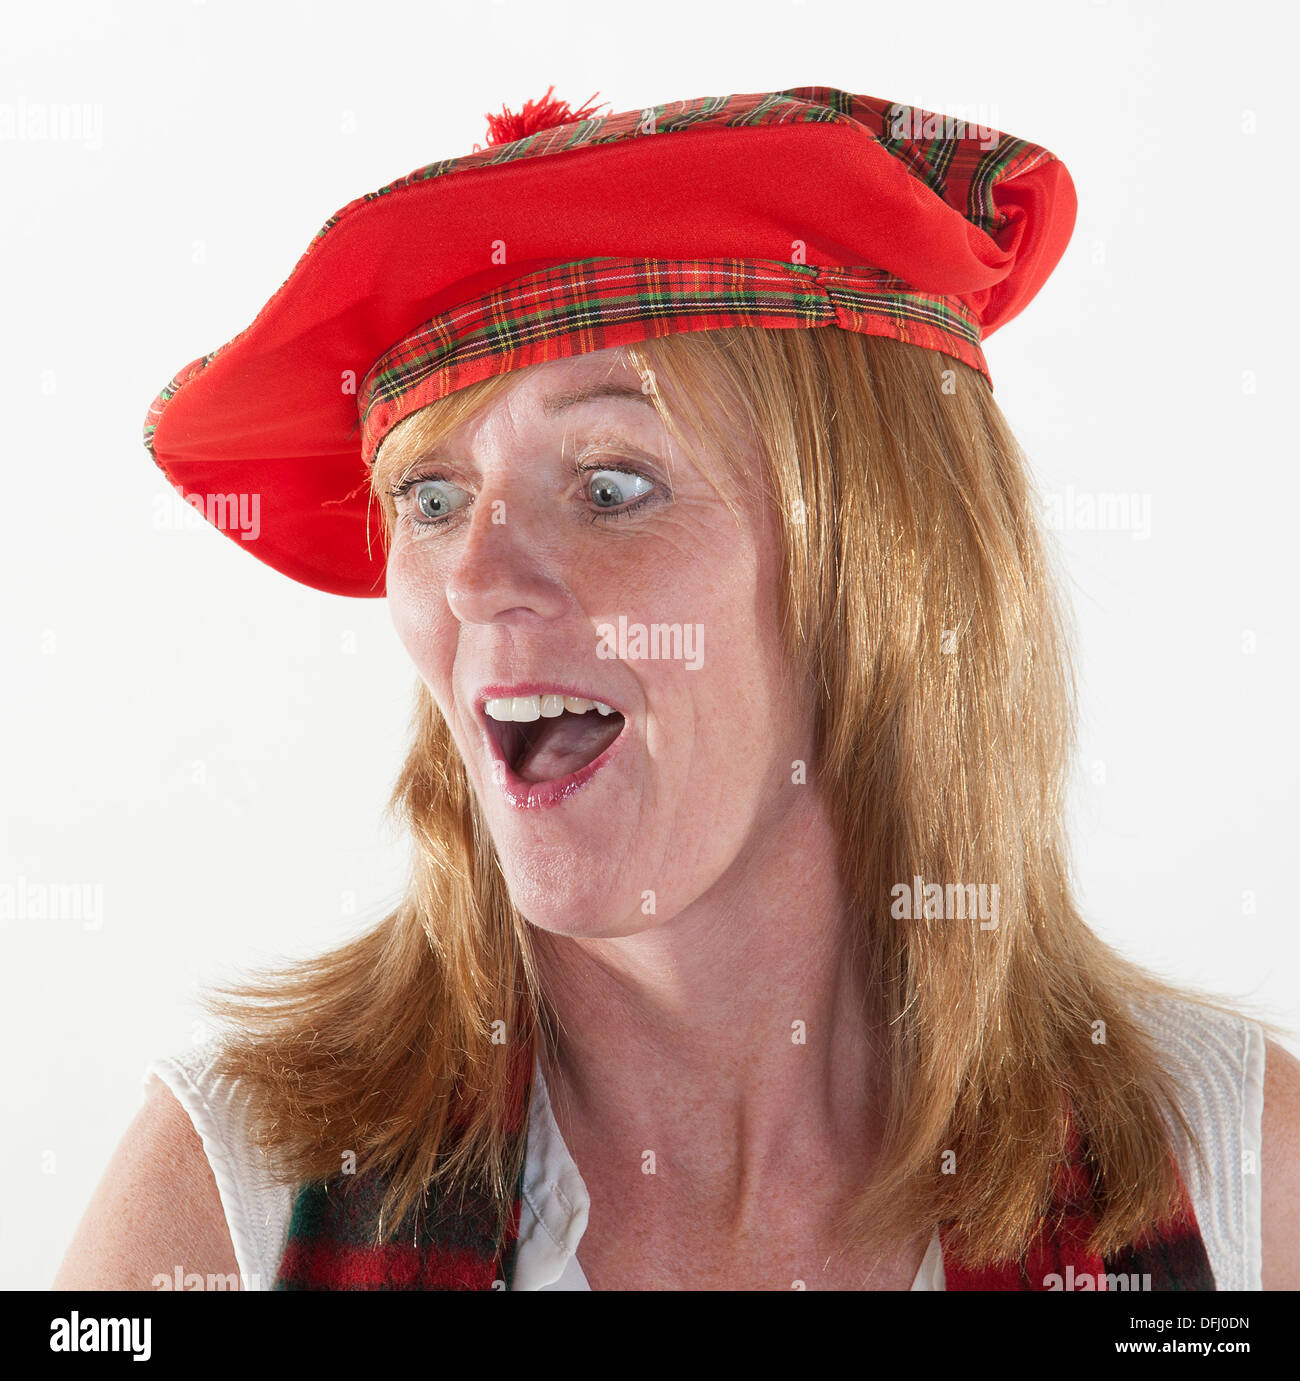 woman-wearing-tam-o-shanter-scottish-hat